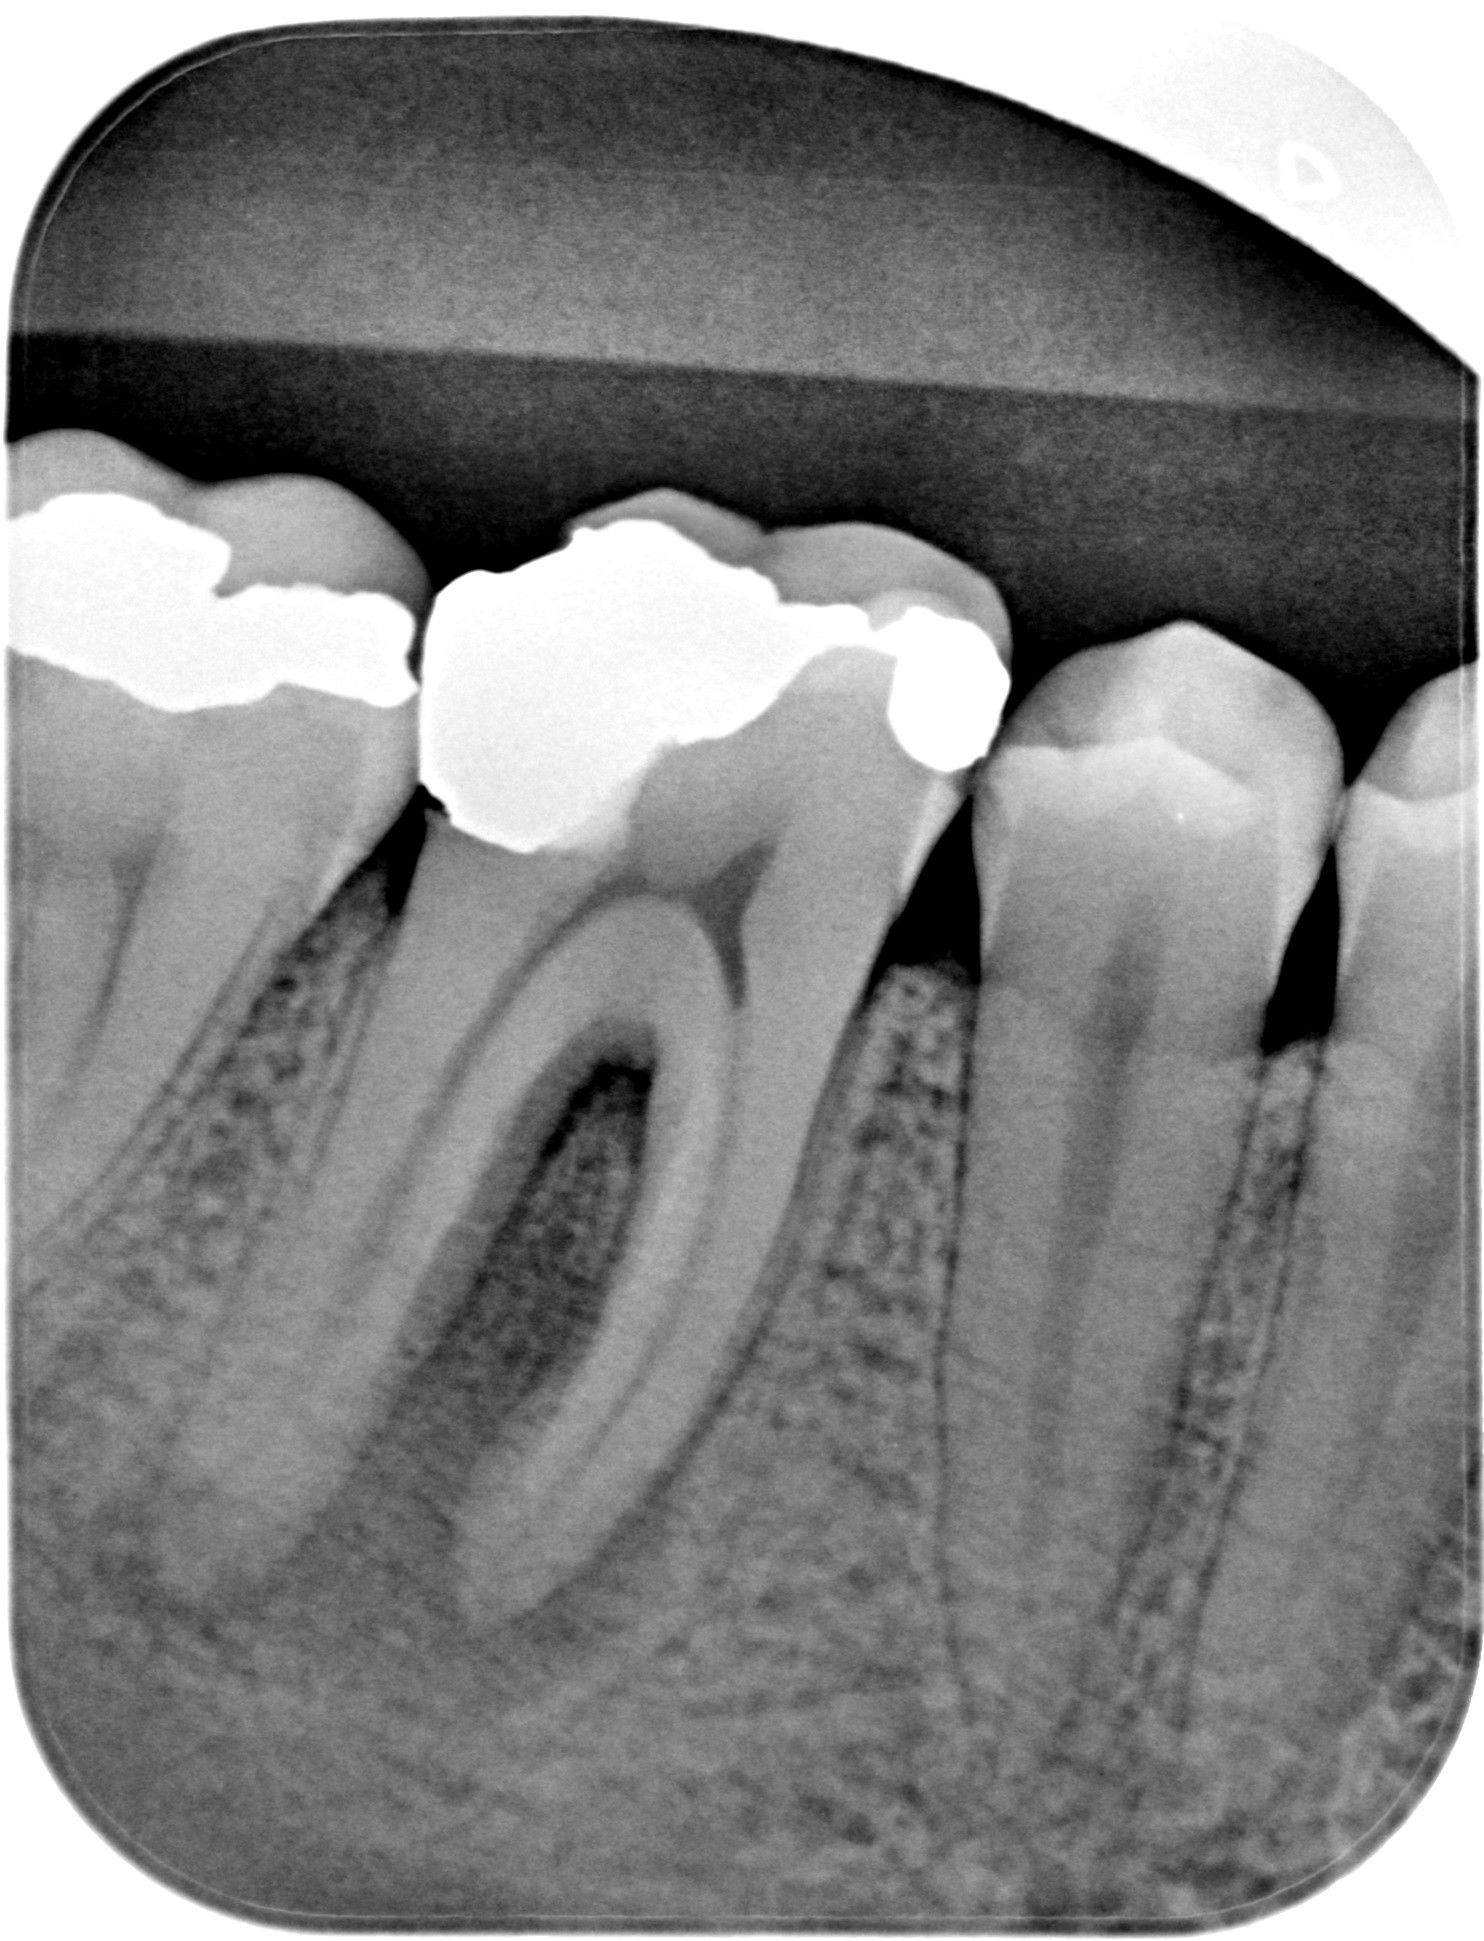 viditeľný chronický zápal v okolí koreňov zuba 46